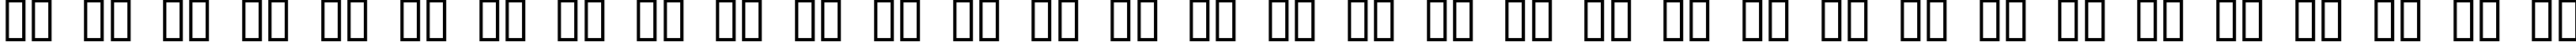 Пример написания русского алфавита шрифтом Xmas Clipart 2